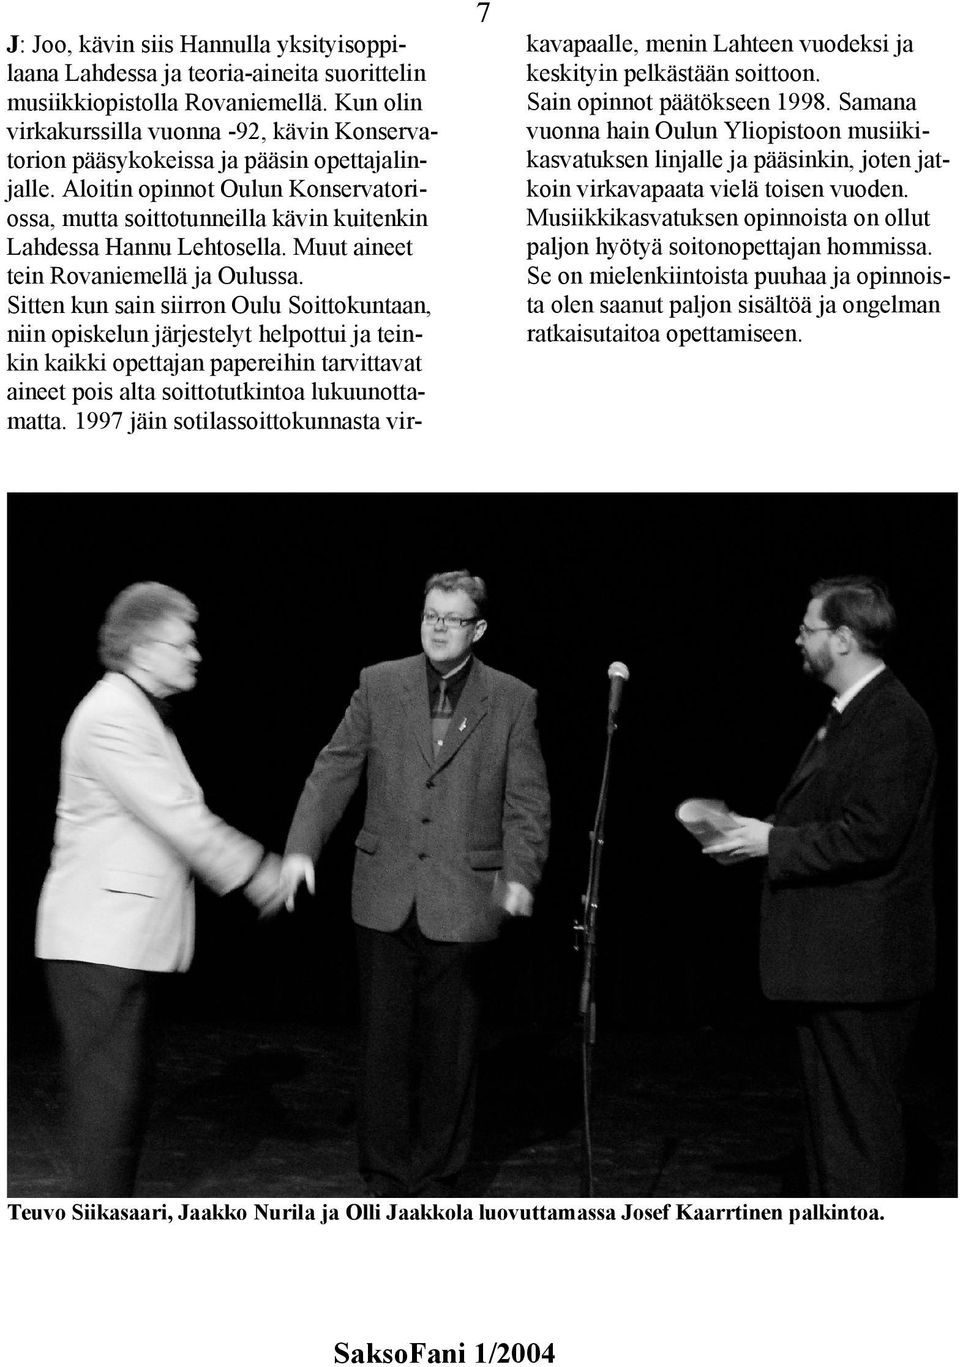 Aloitin opinnot Oulun Konservatoriossa, mutta soittotunneilla kävin kuitenkin Lahdessa Hannu Lehtosella. Muut aineet tein Rovaniemellä ja Oulussa.